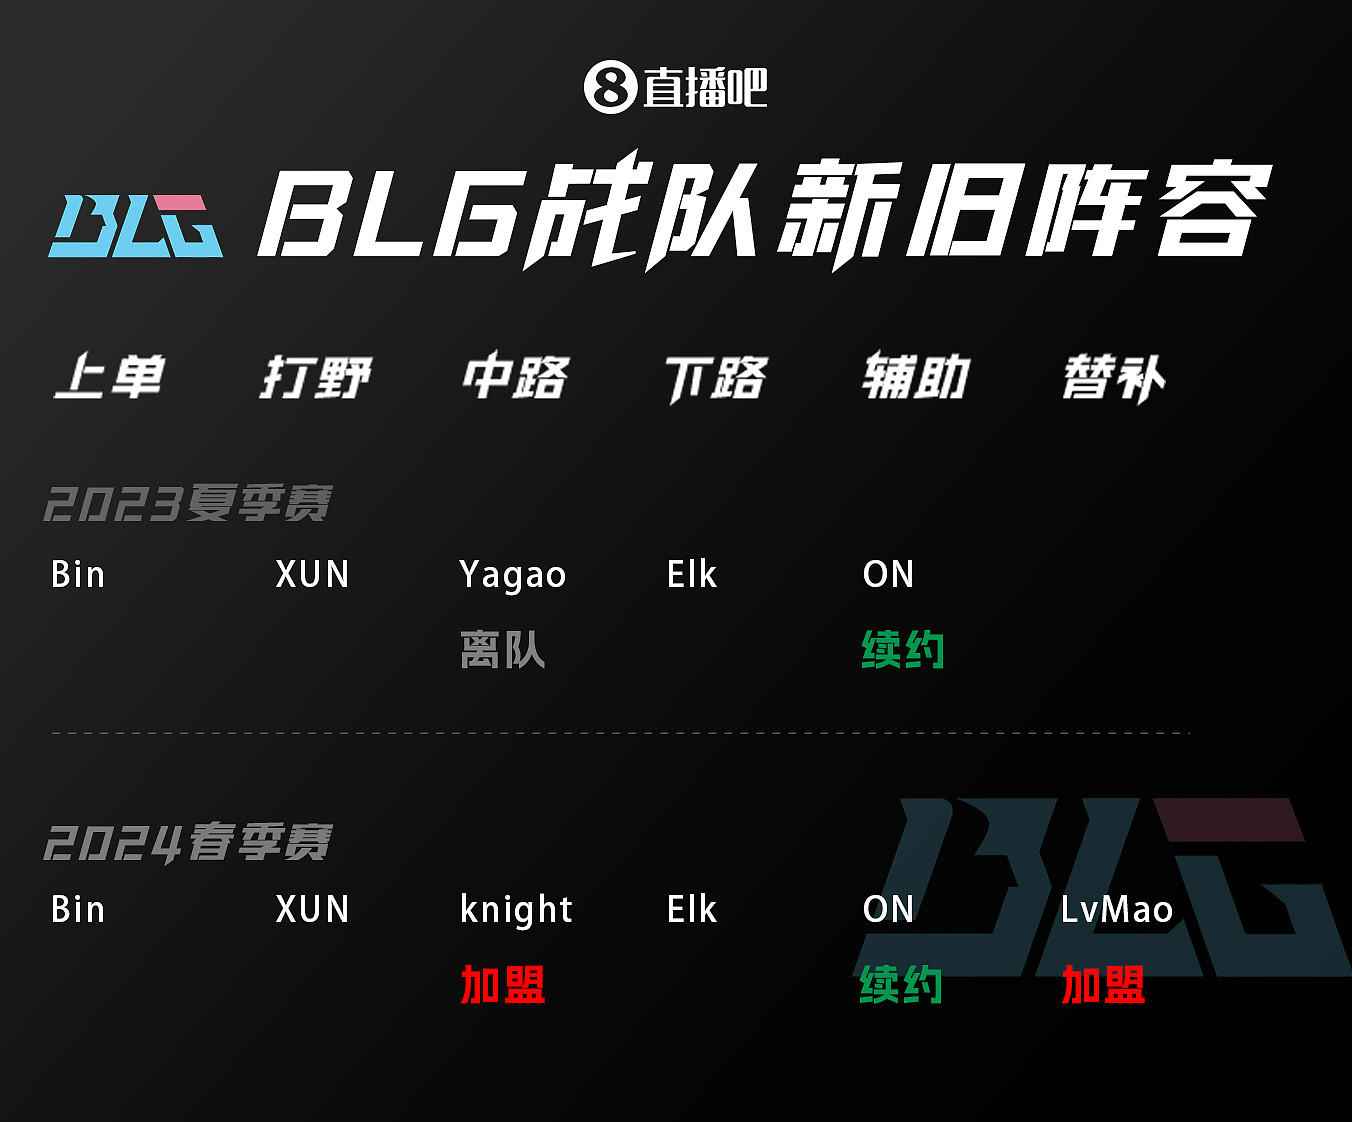 新增knight与LvMao 其他位置人员不变 吧友给BLG新阵容打几分 - 1